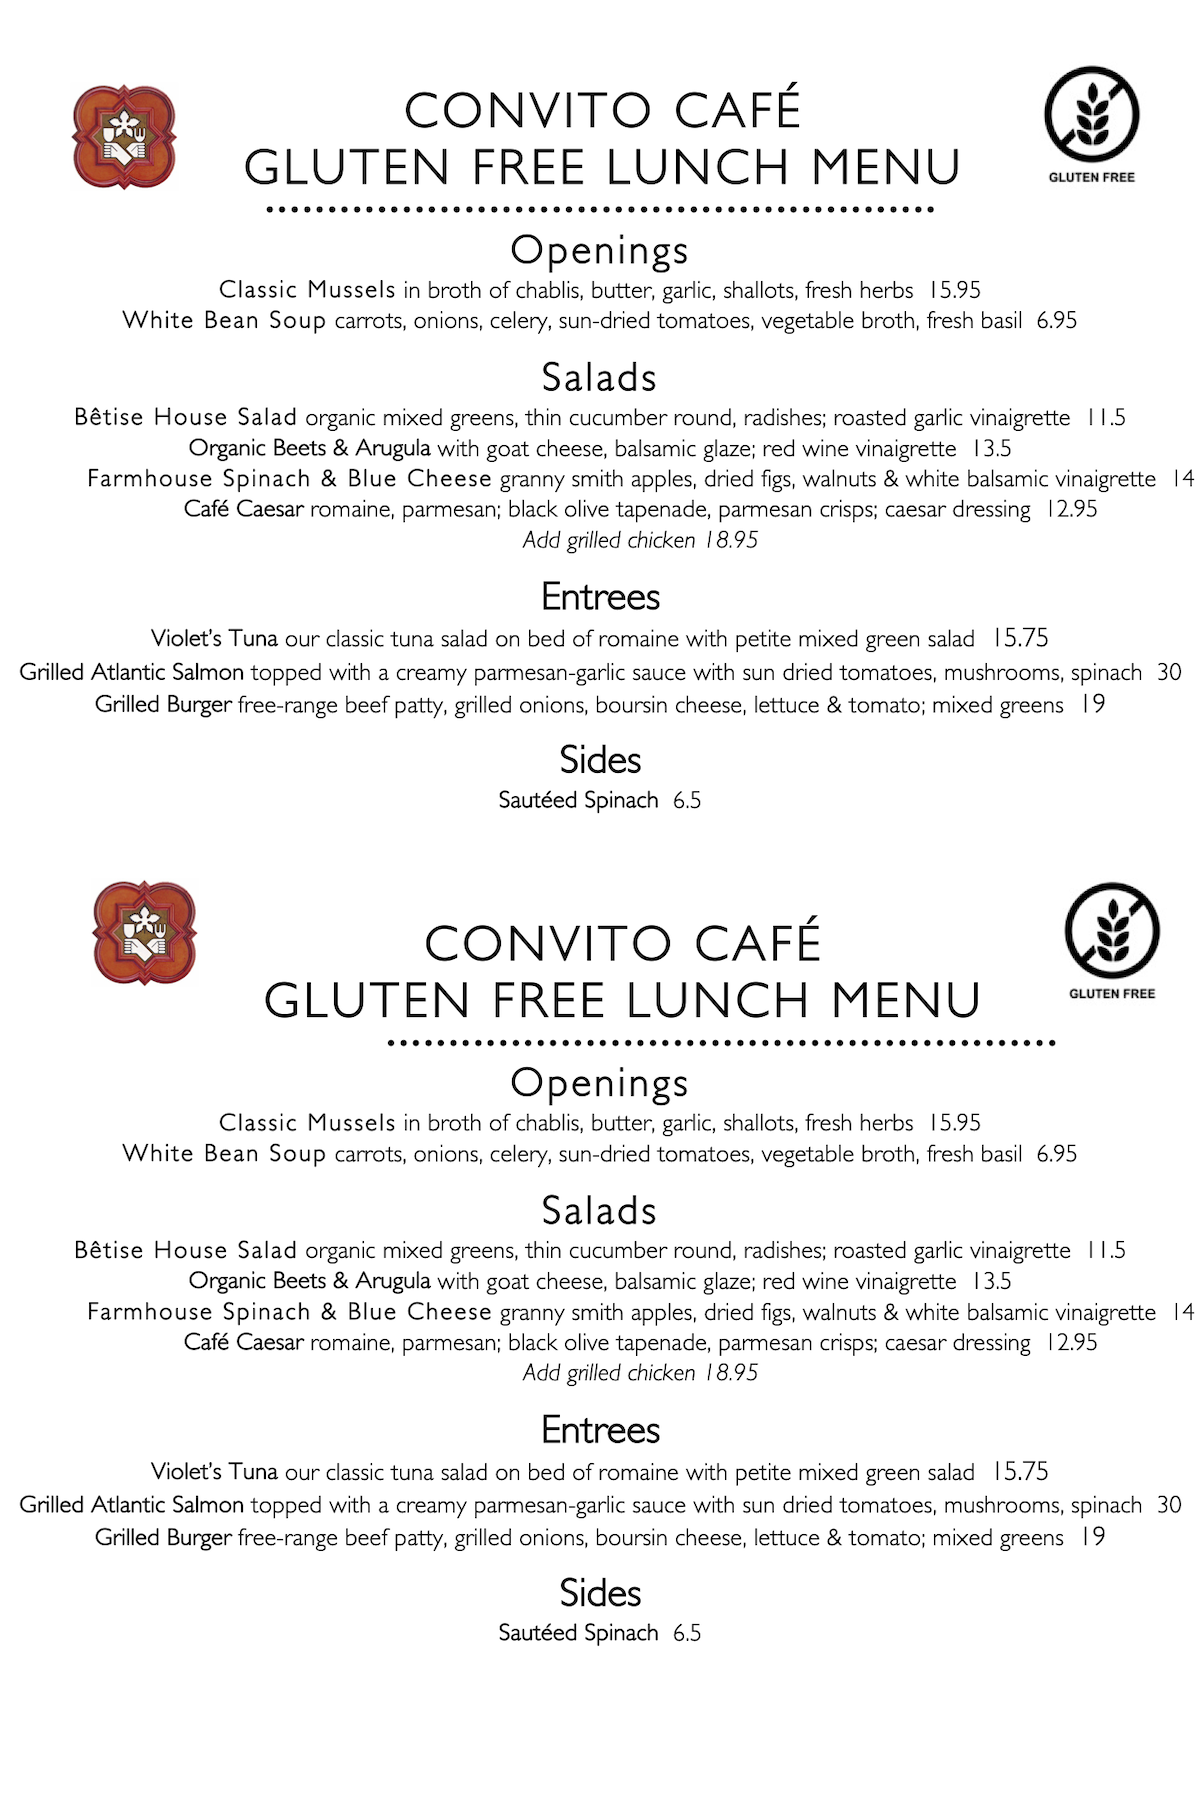 Convito Cafe Gluten Free Lunch Menu